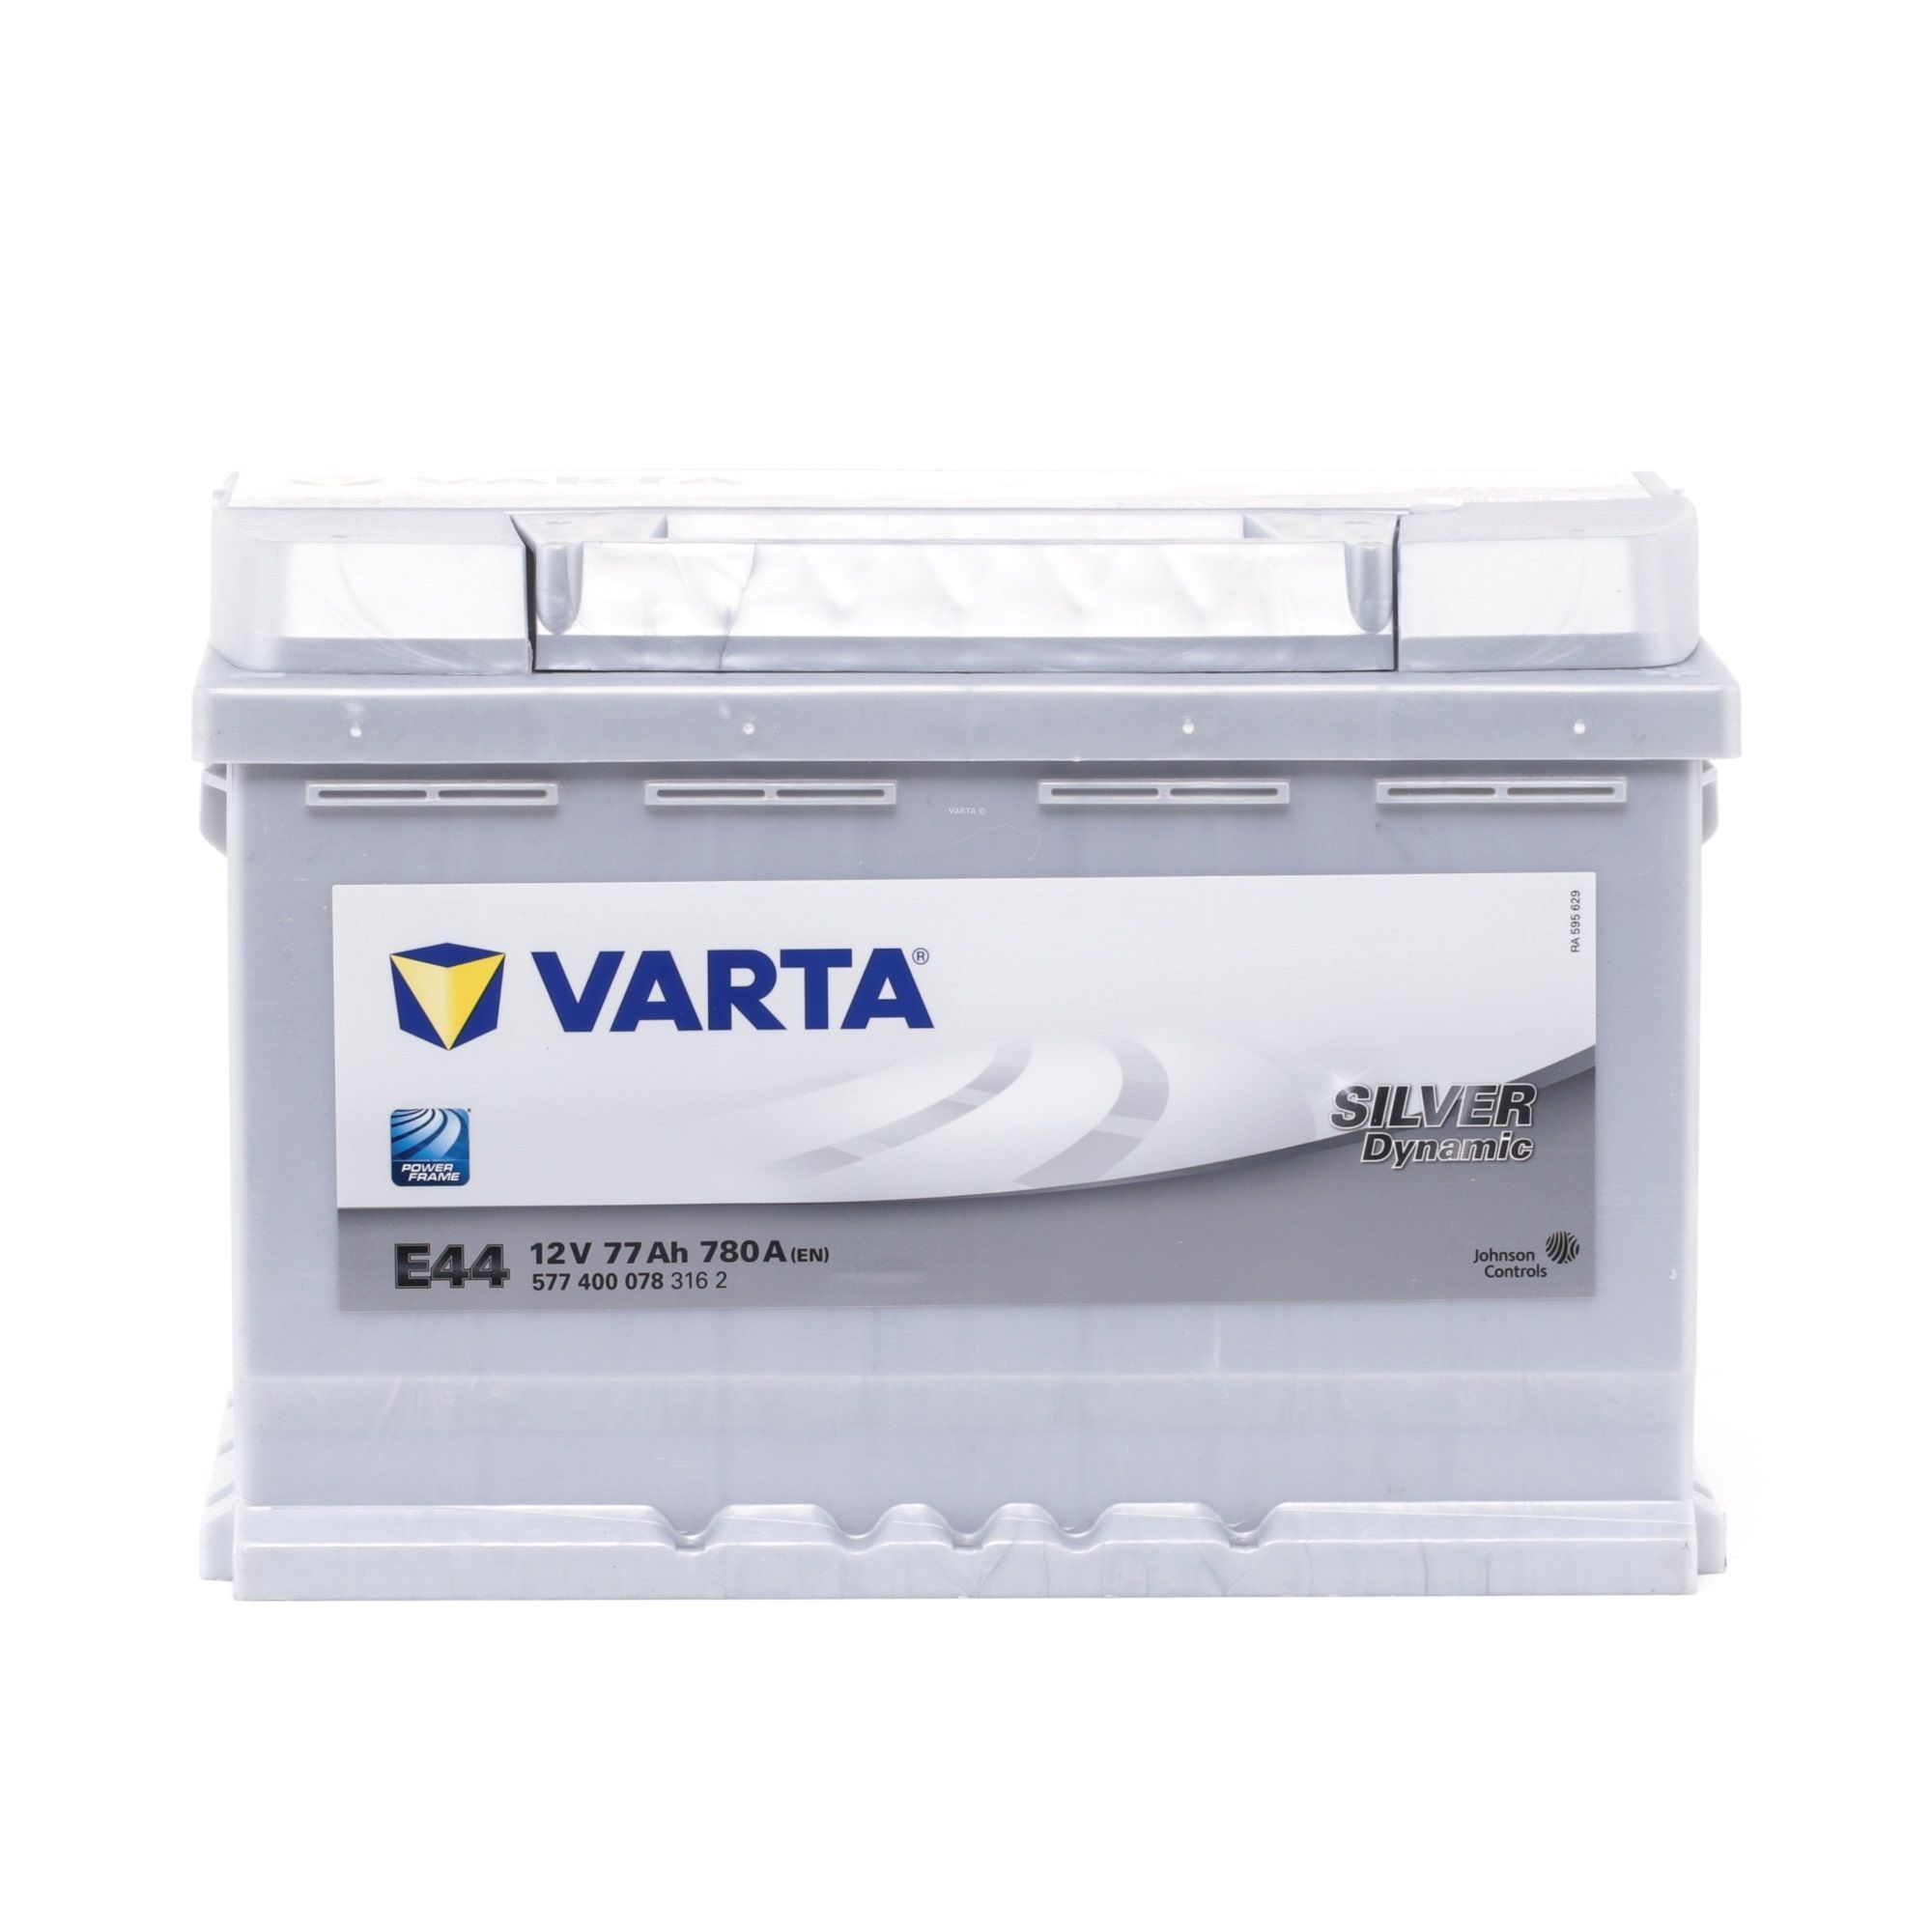 VARTA 5774000783162 Bateria de arranque 12V 77Ah 780A B13 Bateria chumbo-ácido Seat de qualidade original